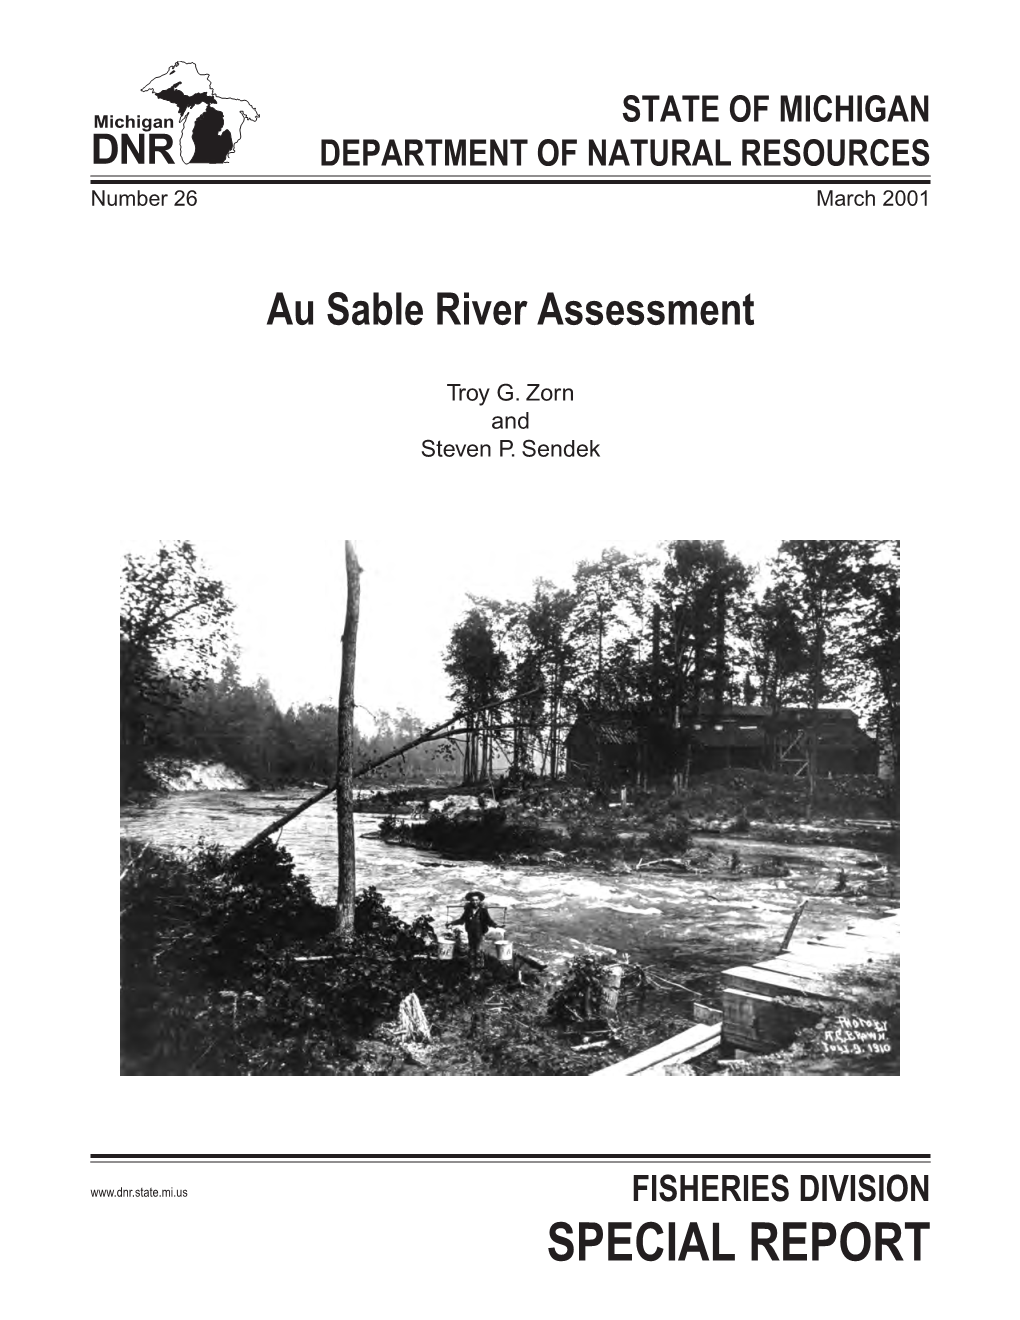 Au Sable River Plan